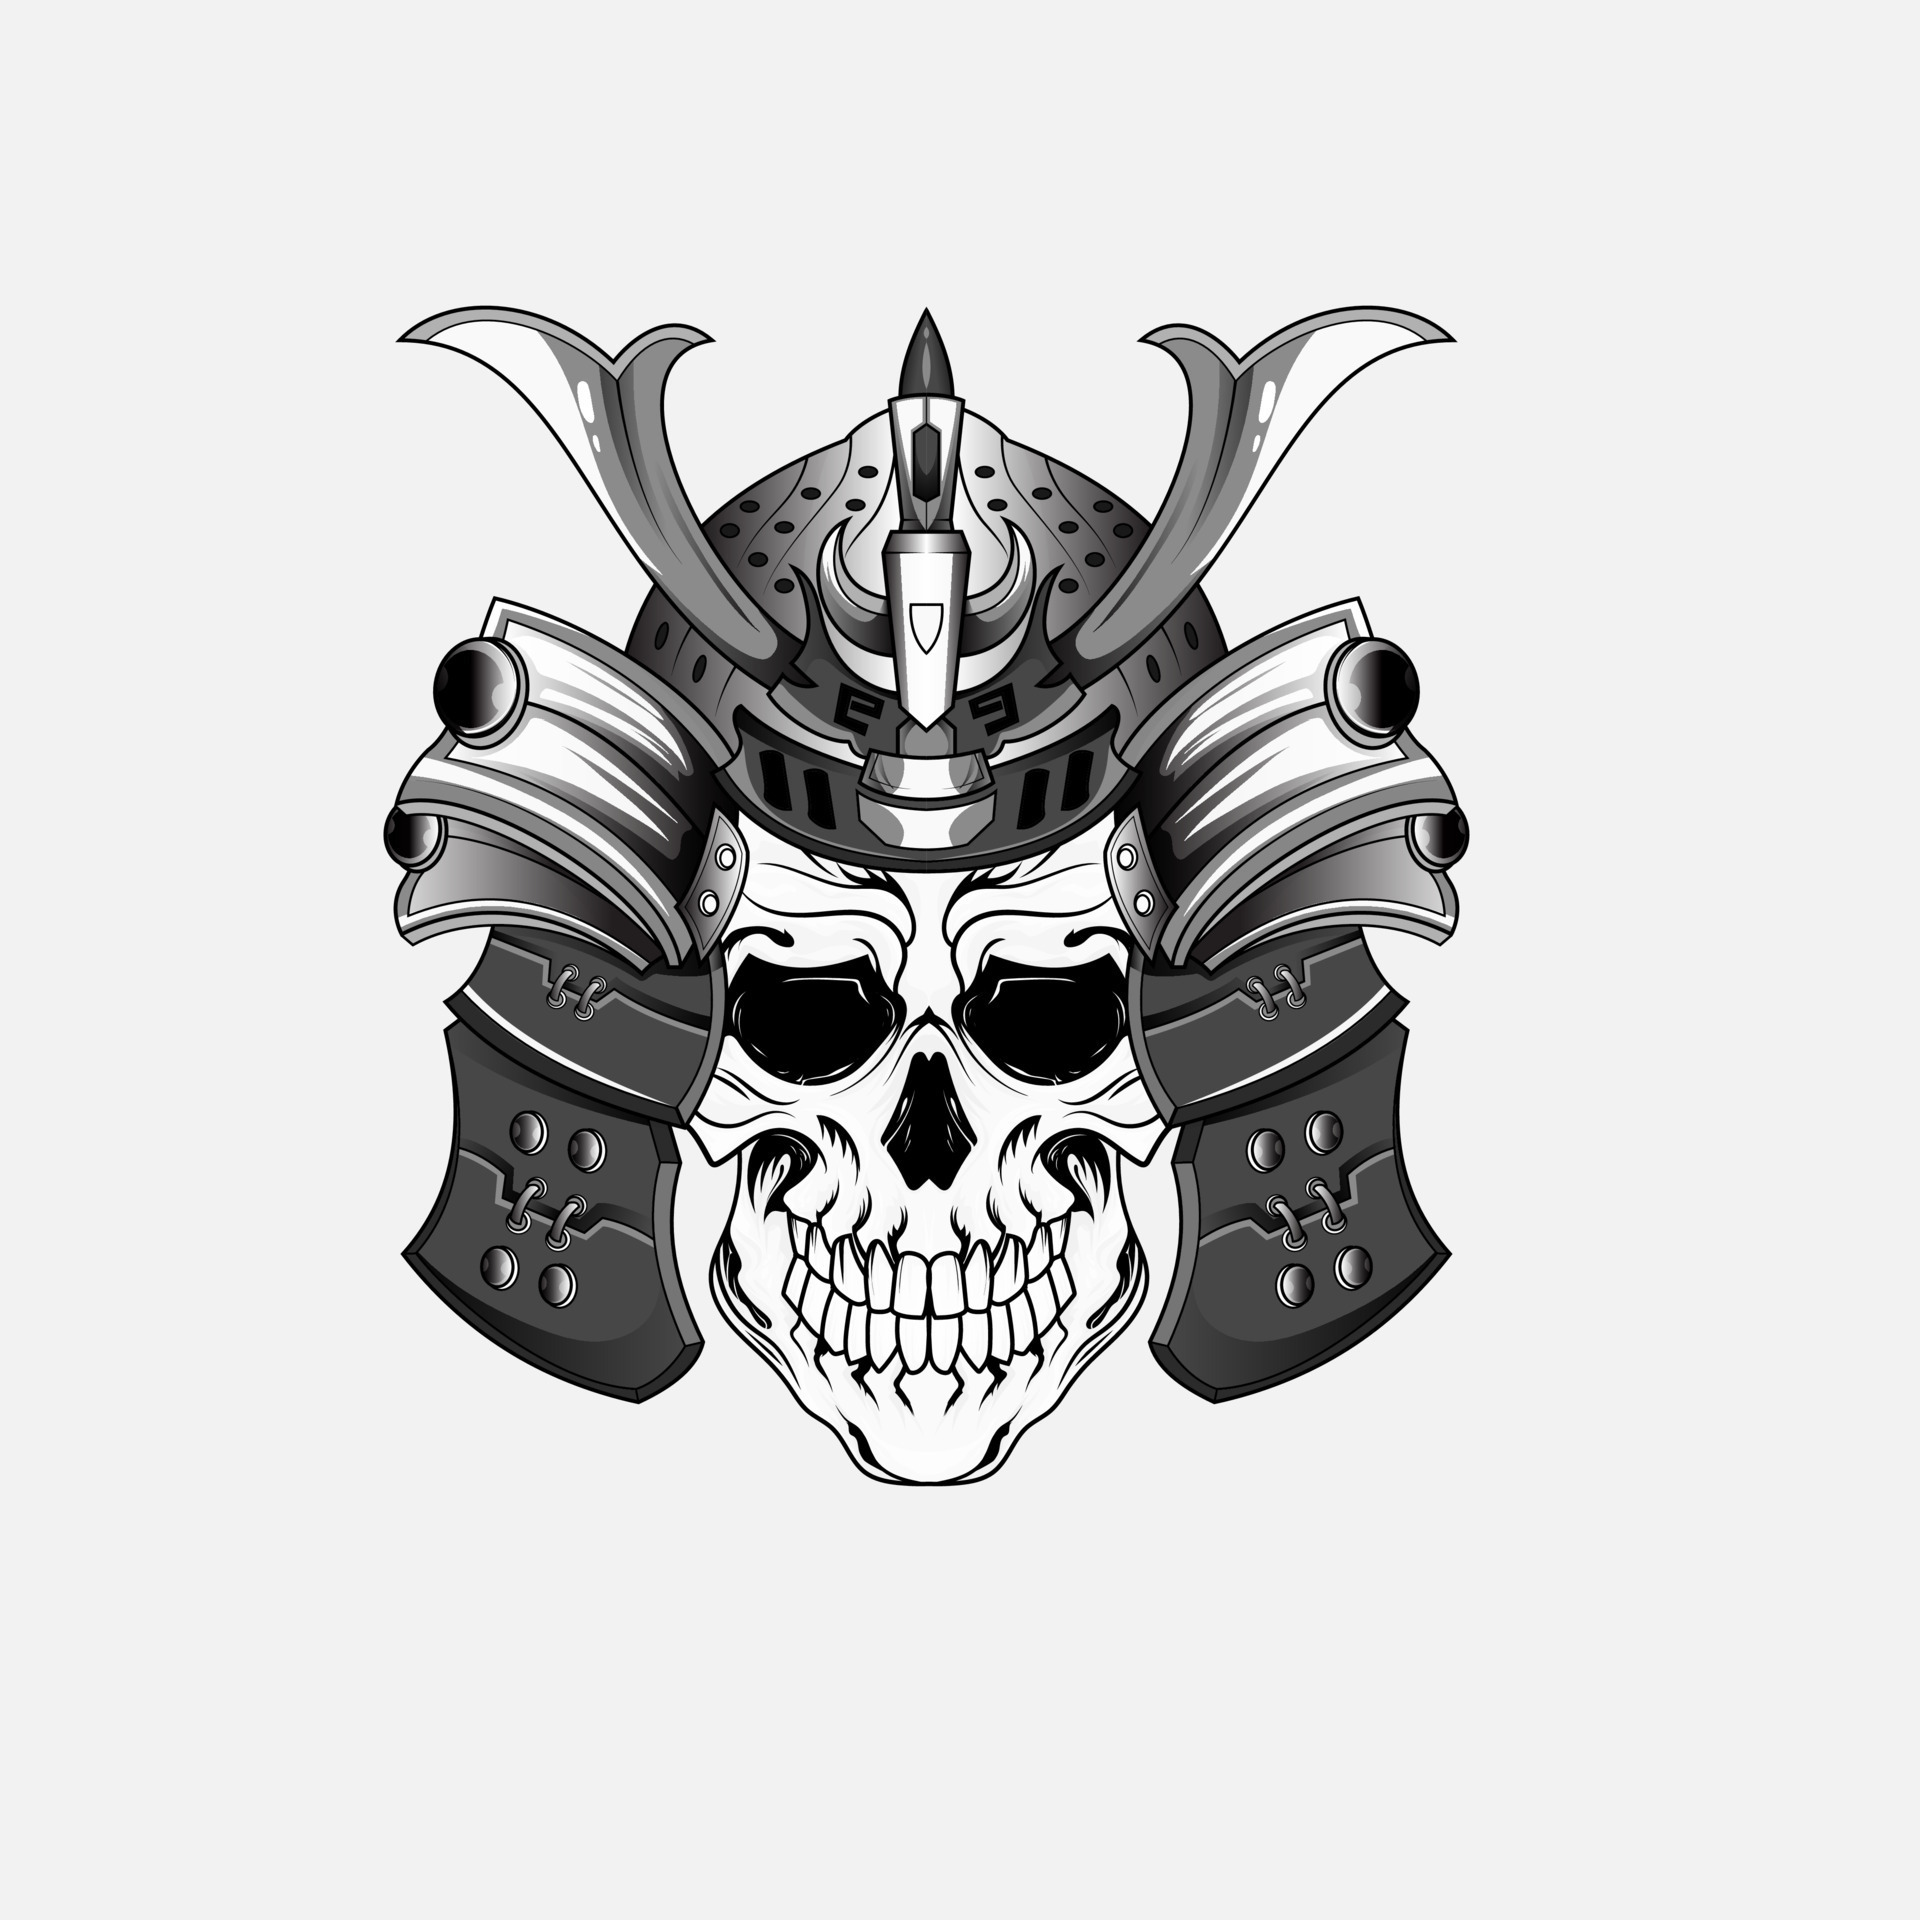 tatuagem de caveira de guerreiro samurai ou máscara japonesa e ninja  japonês. Cabeça de crânio de guerreiro samurai japonês com espada de  armadura ronin, demônio shogun do exército kamikaze. 14016453 Vetor no